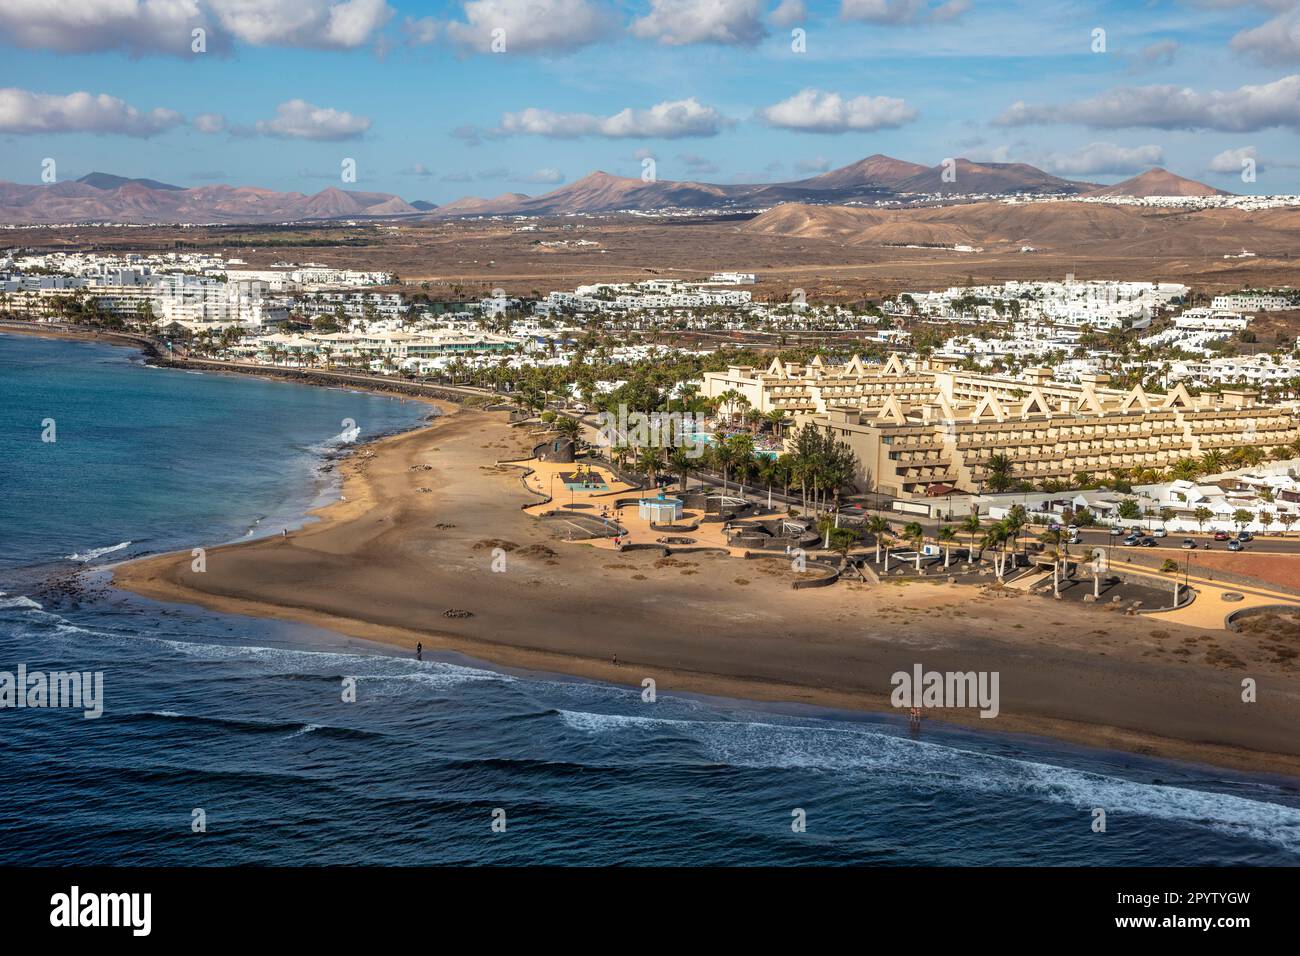 Spagna, Isole Canarie, Lanzarote. Puerto del Carmen. Playa Lima. Hotel Beatriz. Antenna. Foto Stock